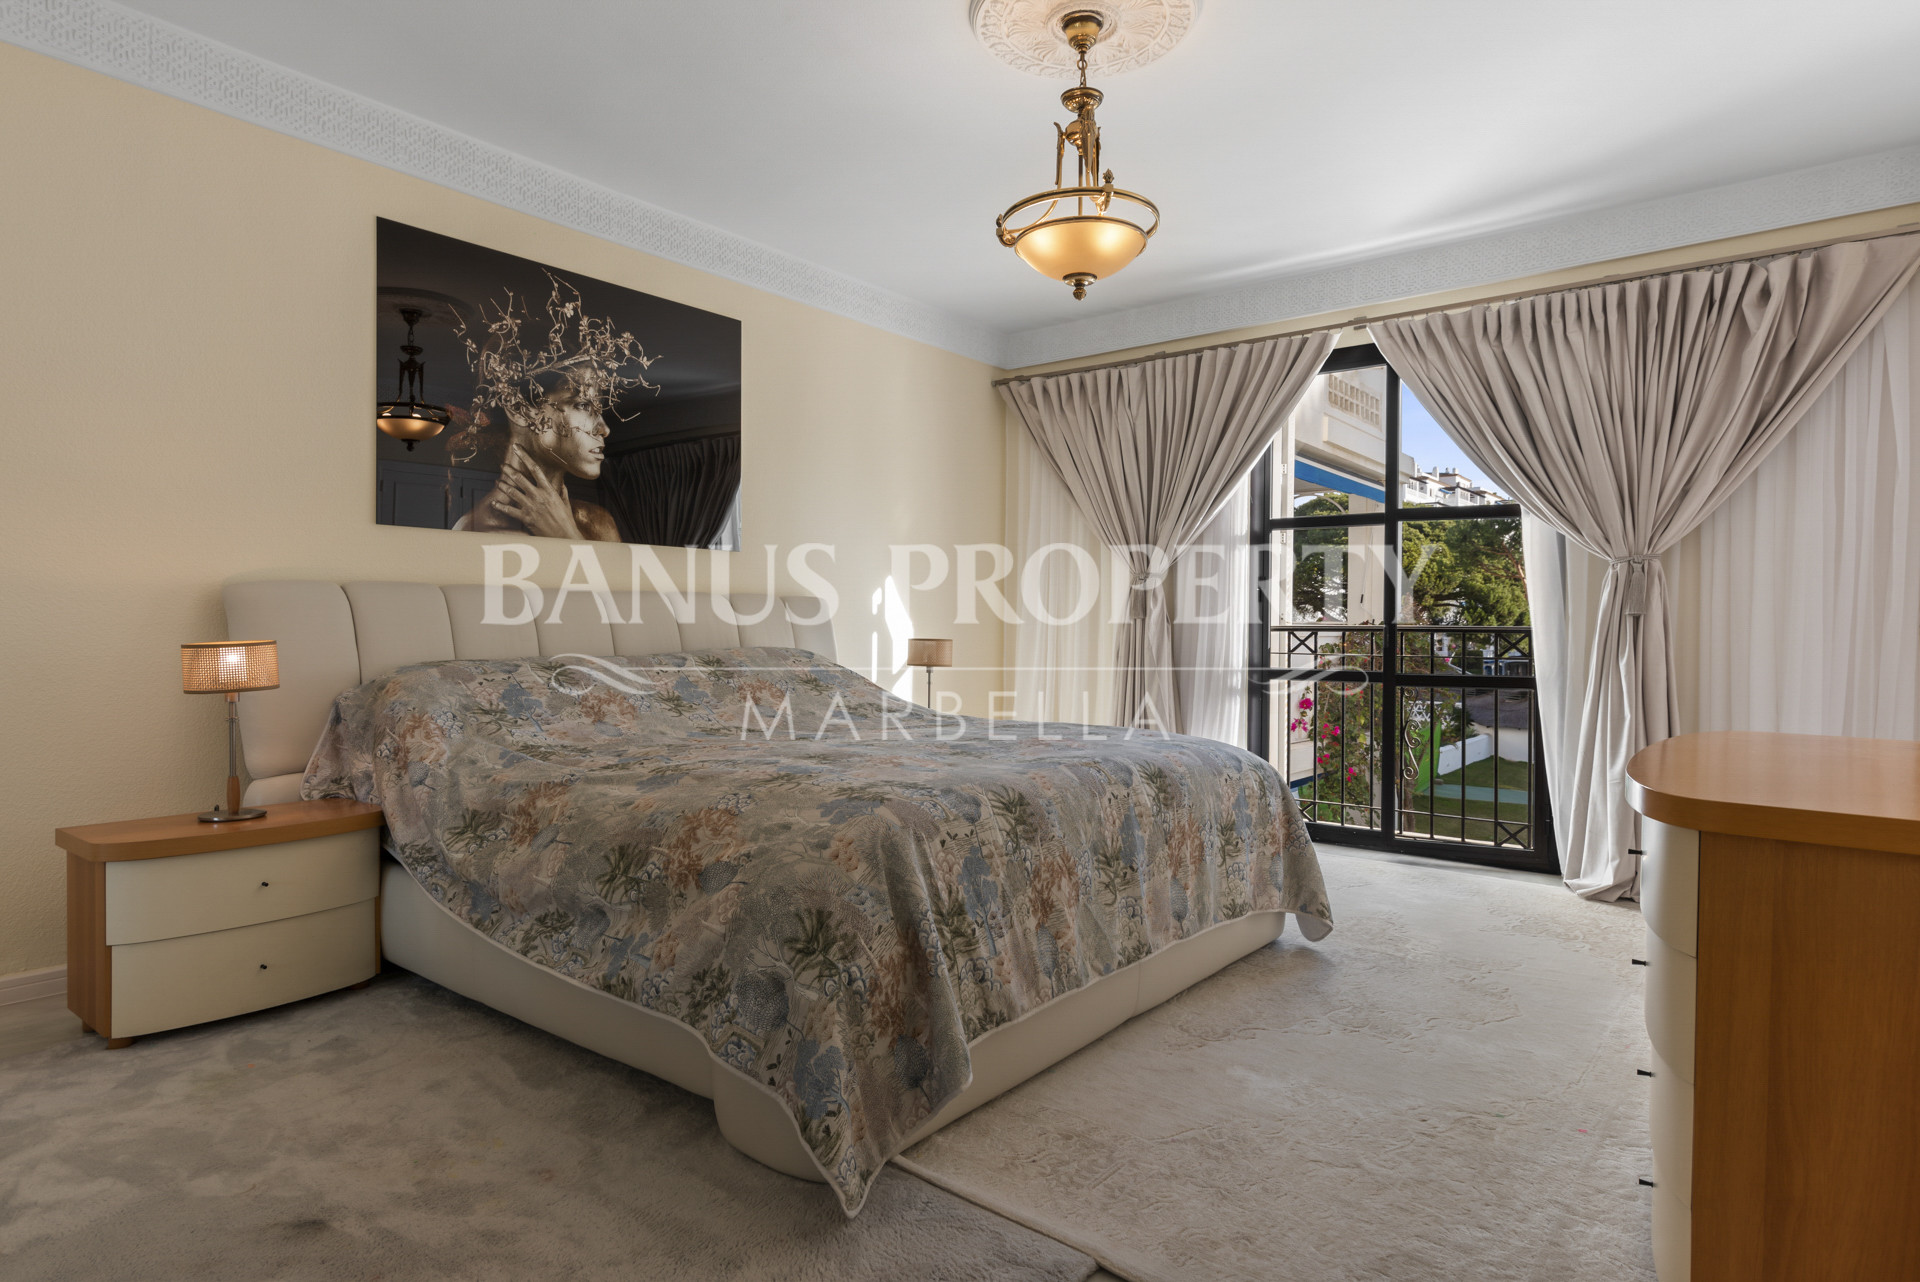 2- Bed- Apartment in with garden views in Playas del Duque- Puerto Banus